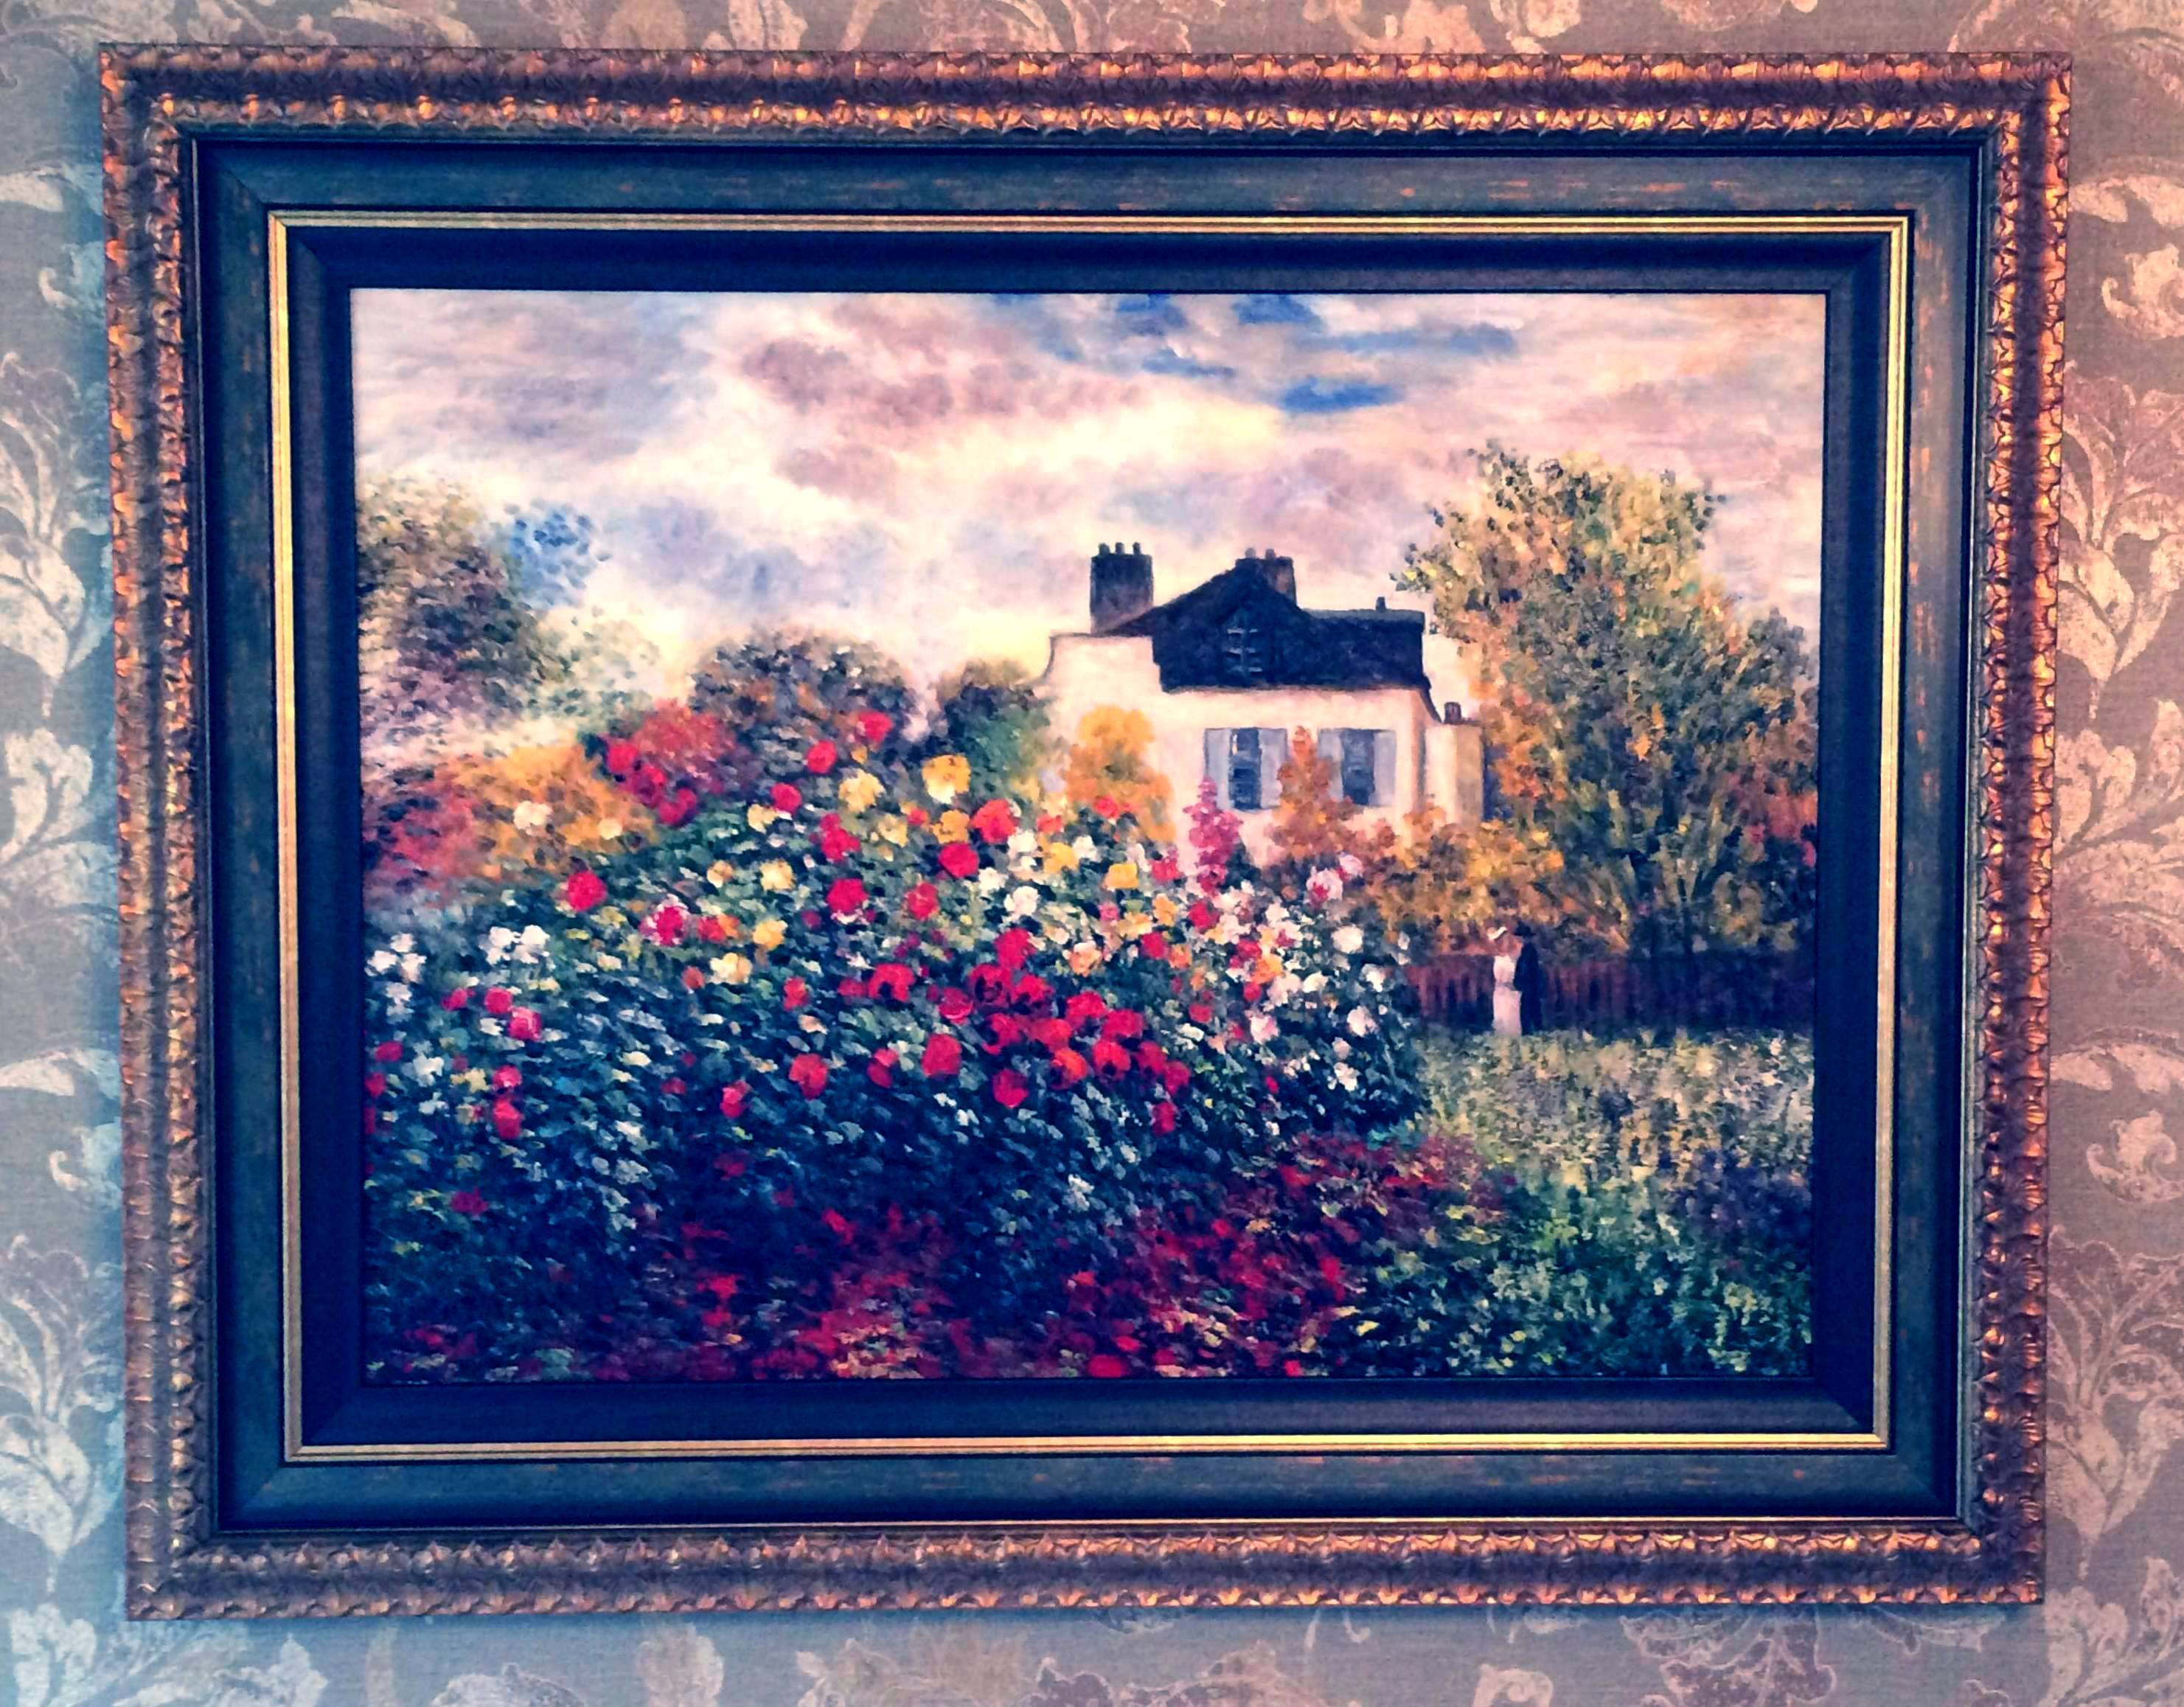 Artist Garden at Argenteuil - Claude Monet